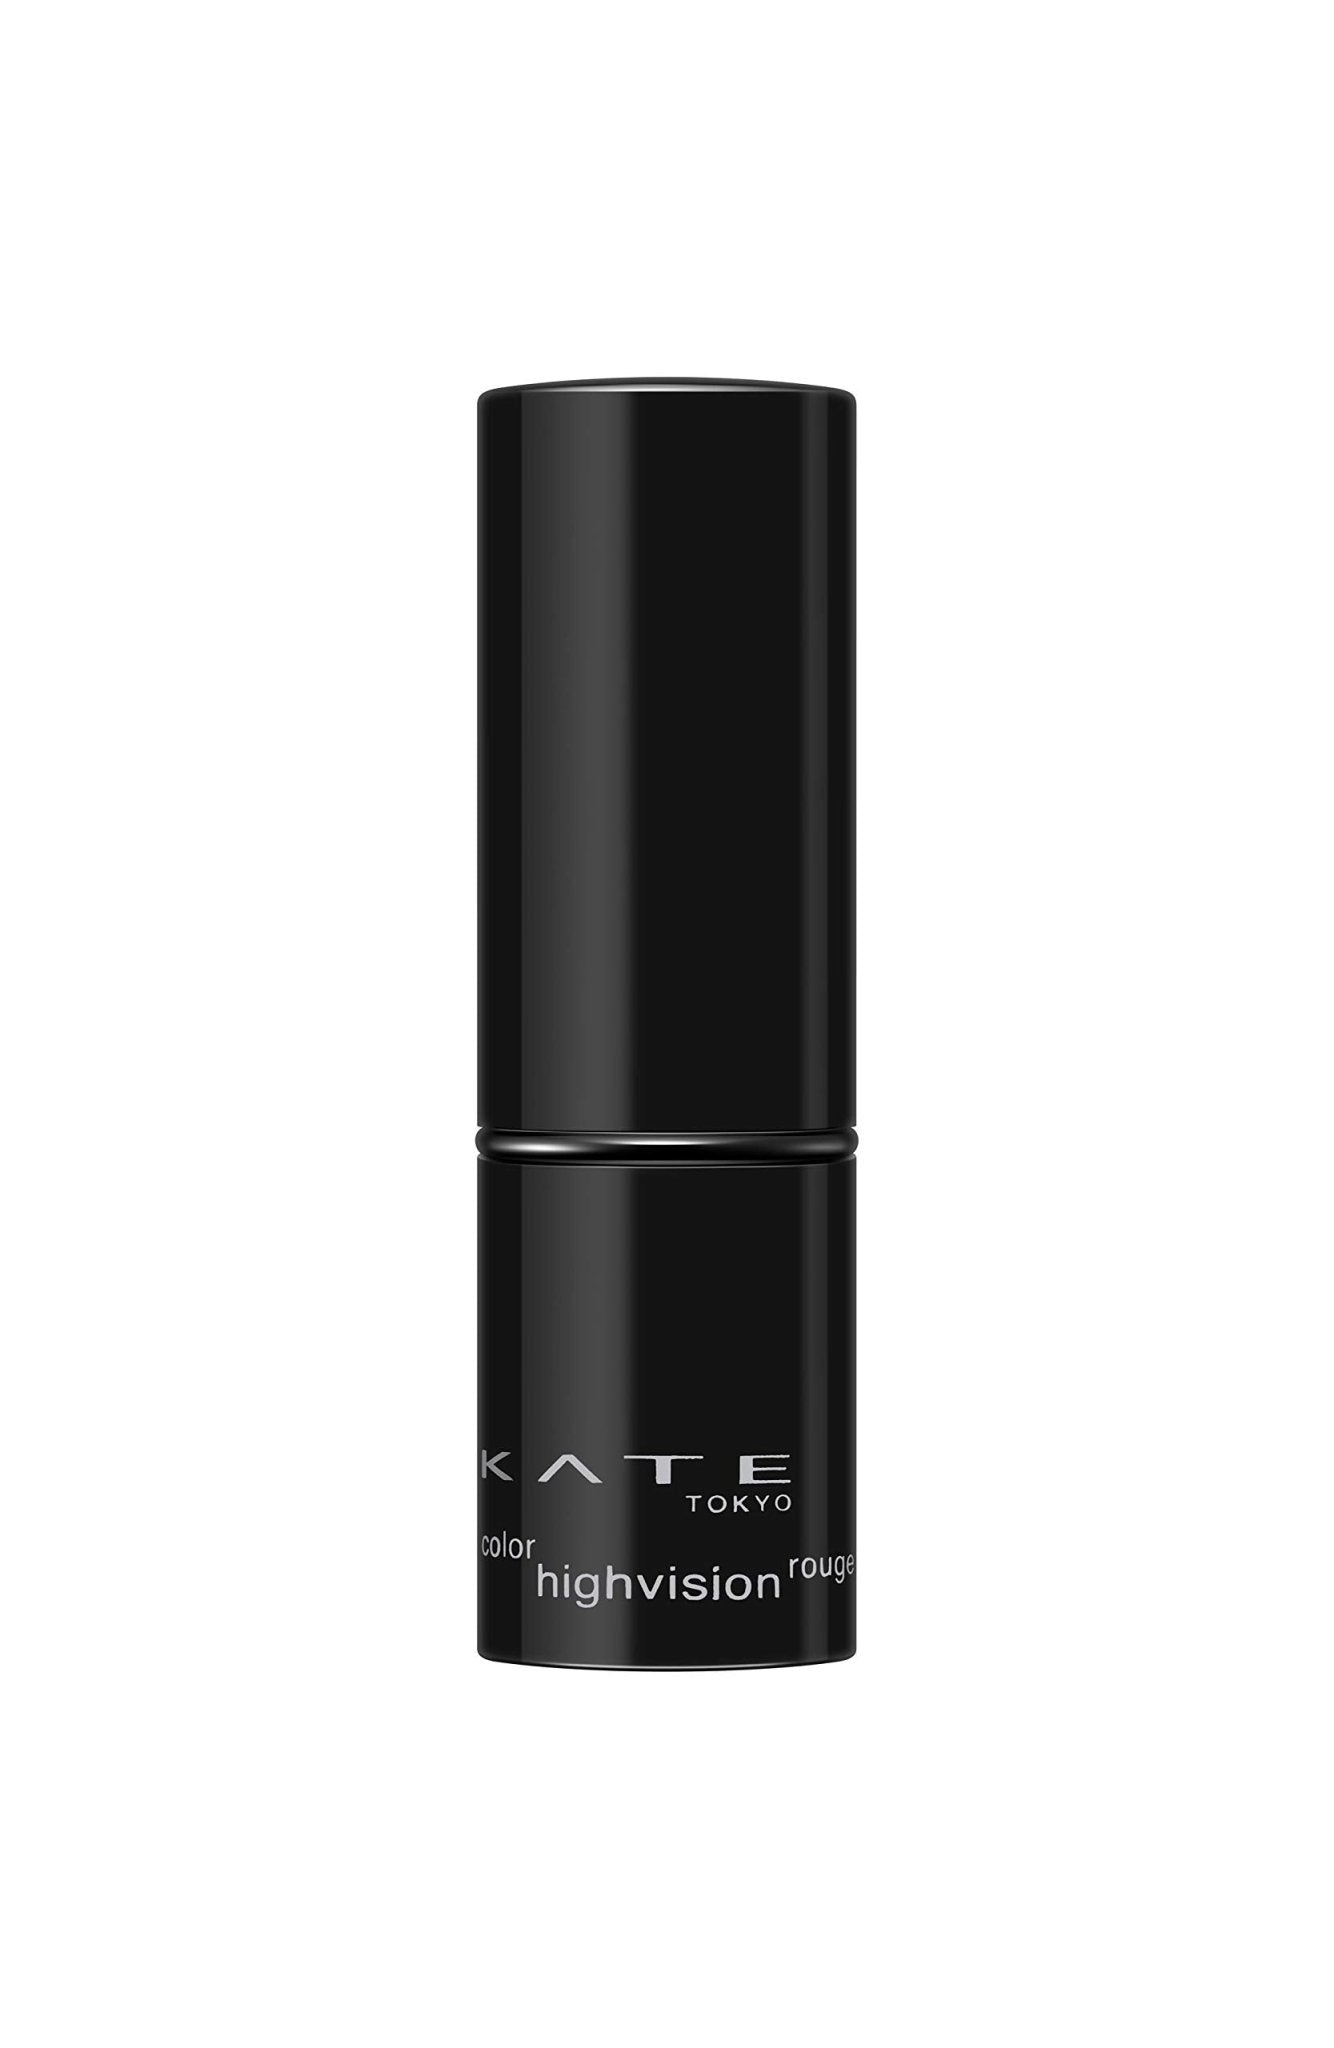 Kate Hi - Vision Lipstick Rouge Or - 3 Color - Long - Lasting Matte Finish